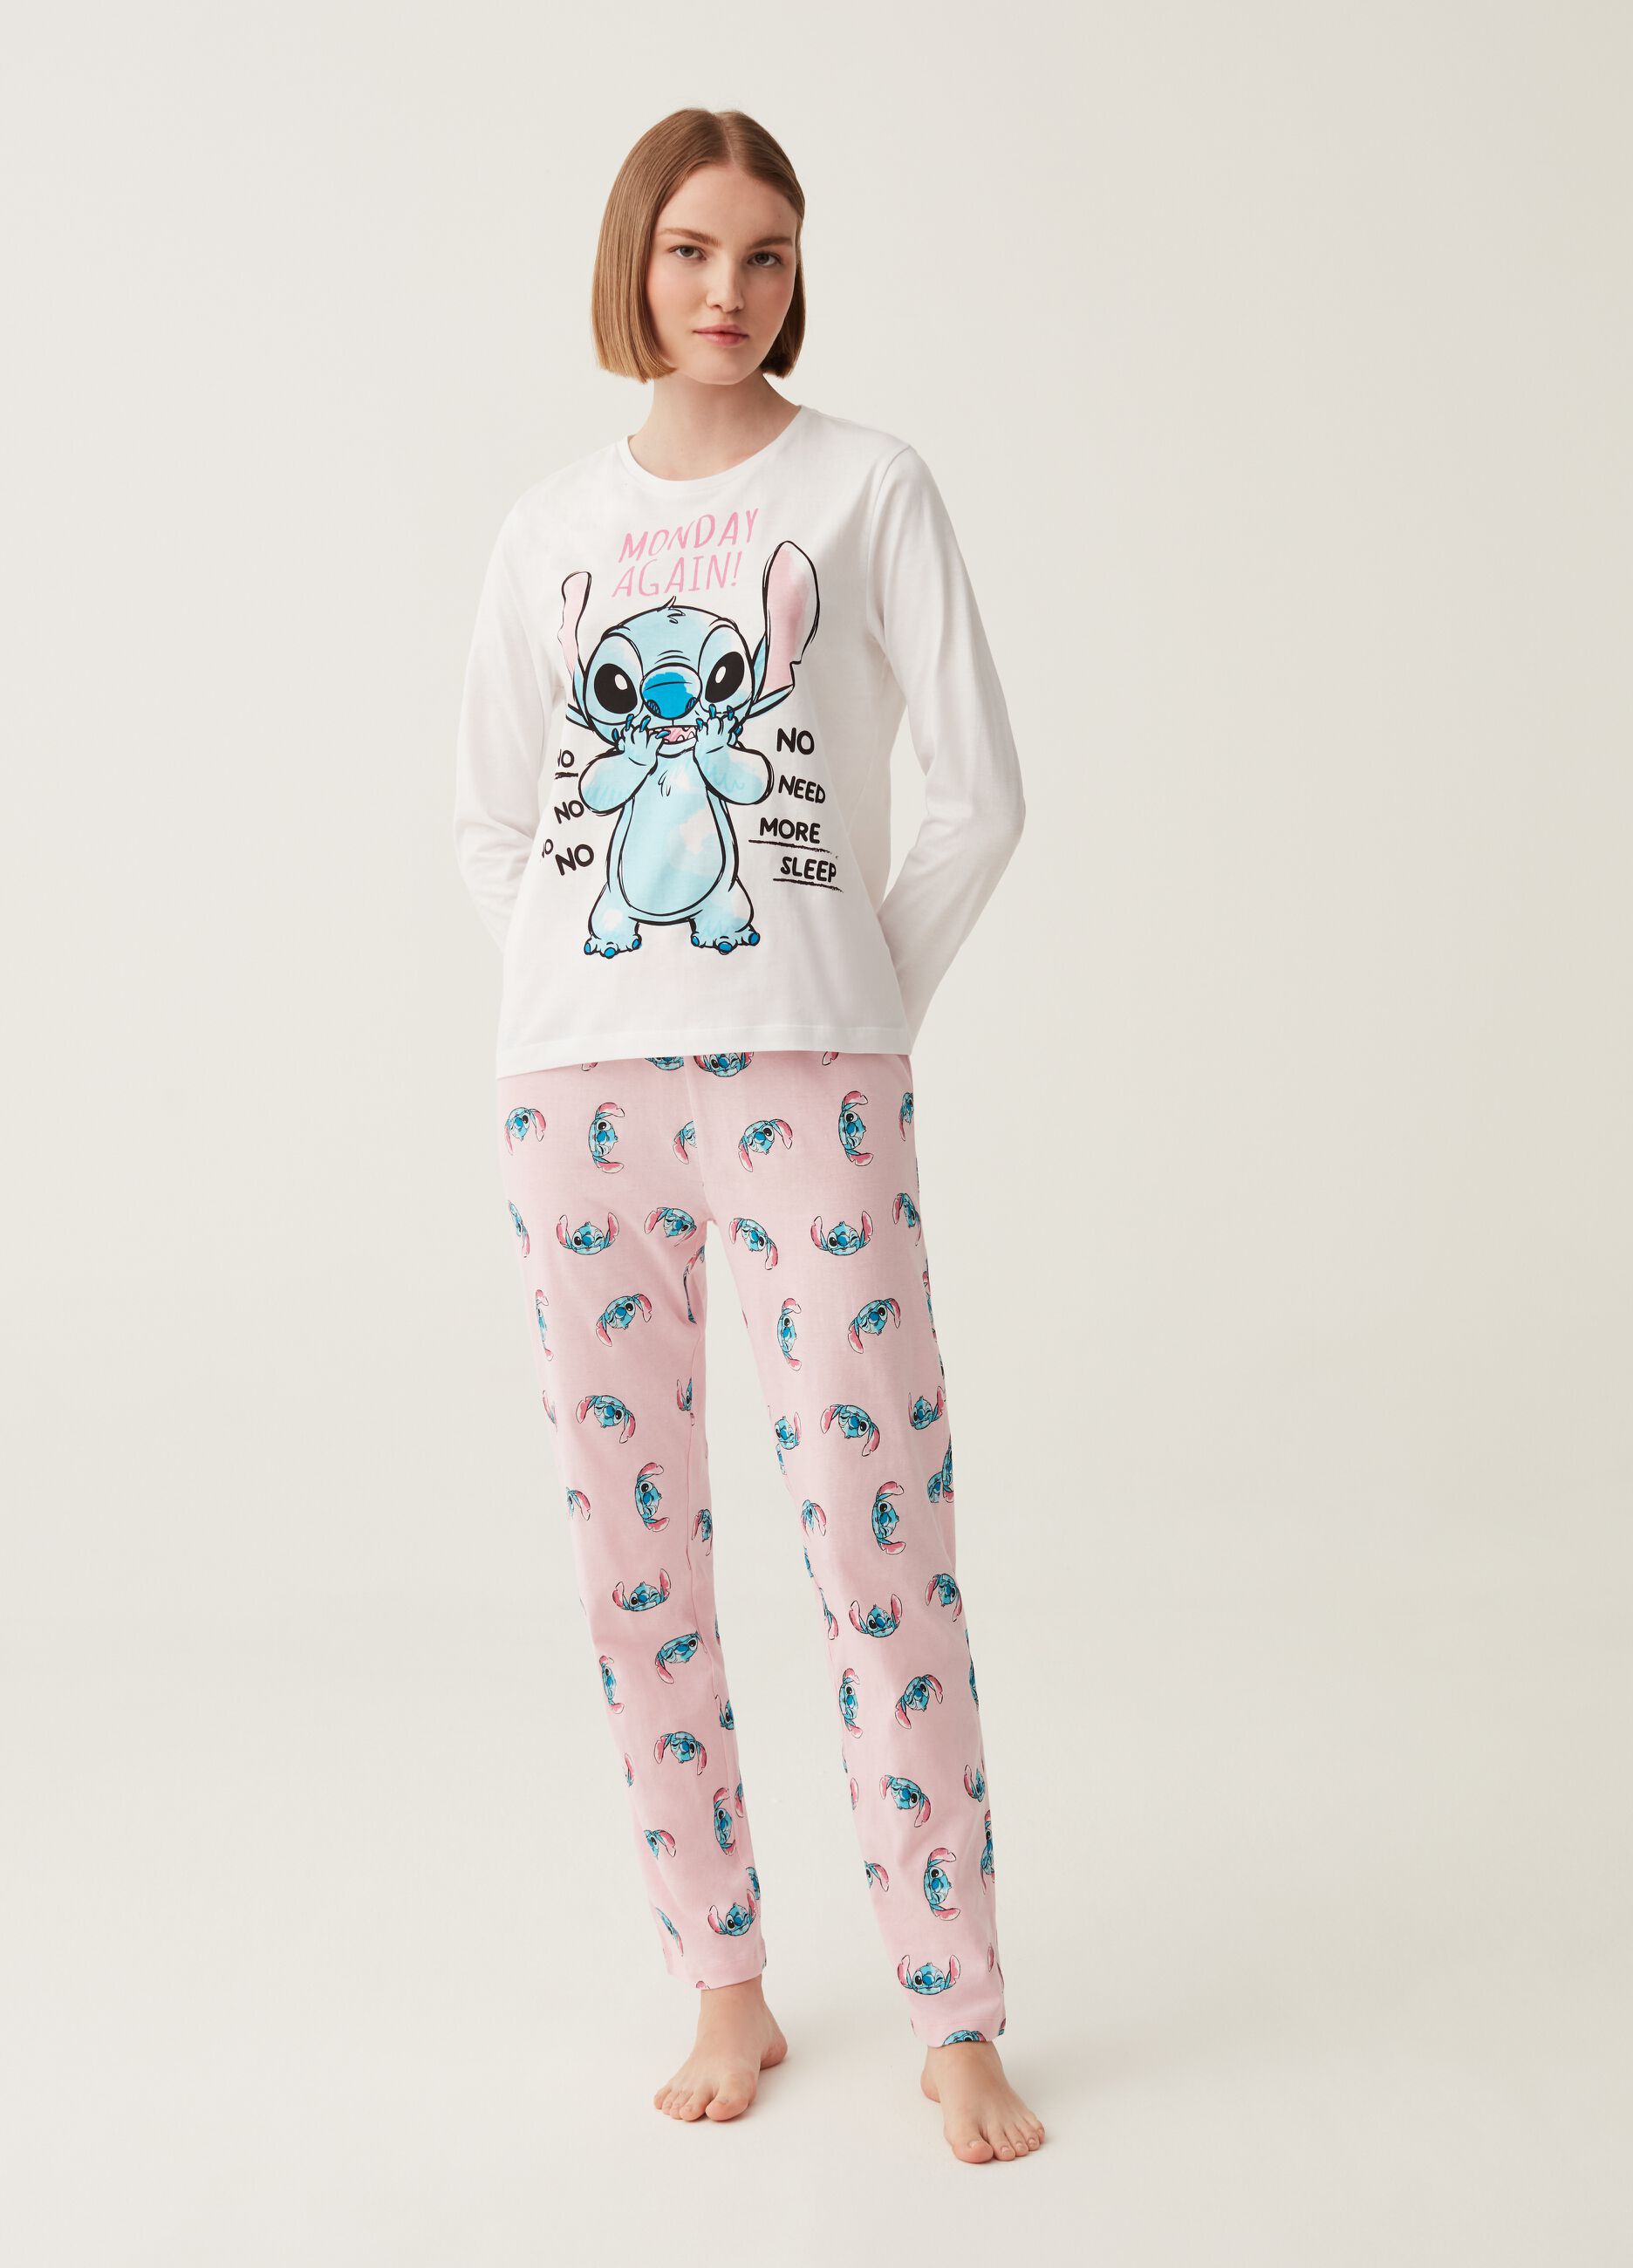 Pijama de Lilo y Stitch Blanco por sólo 26,99€